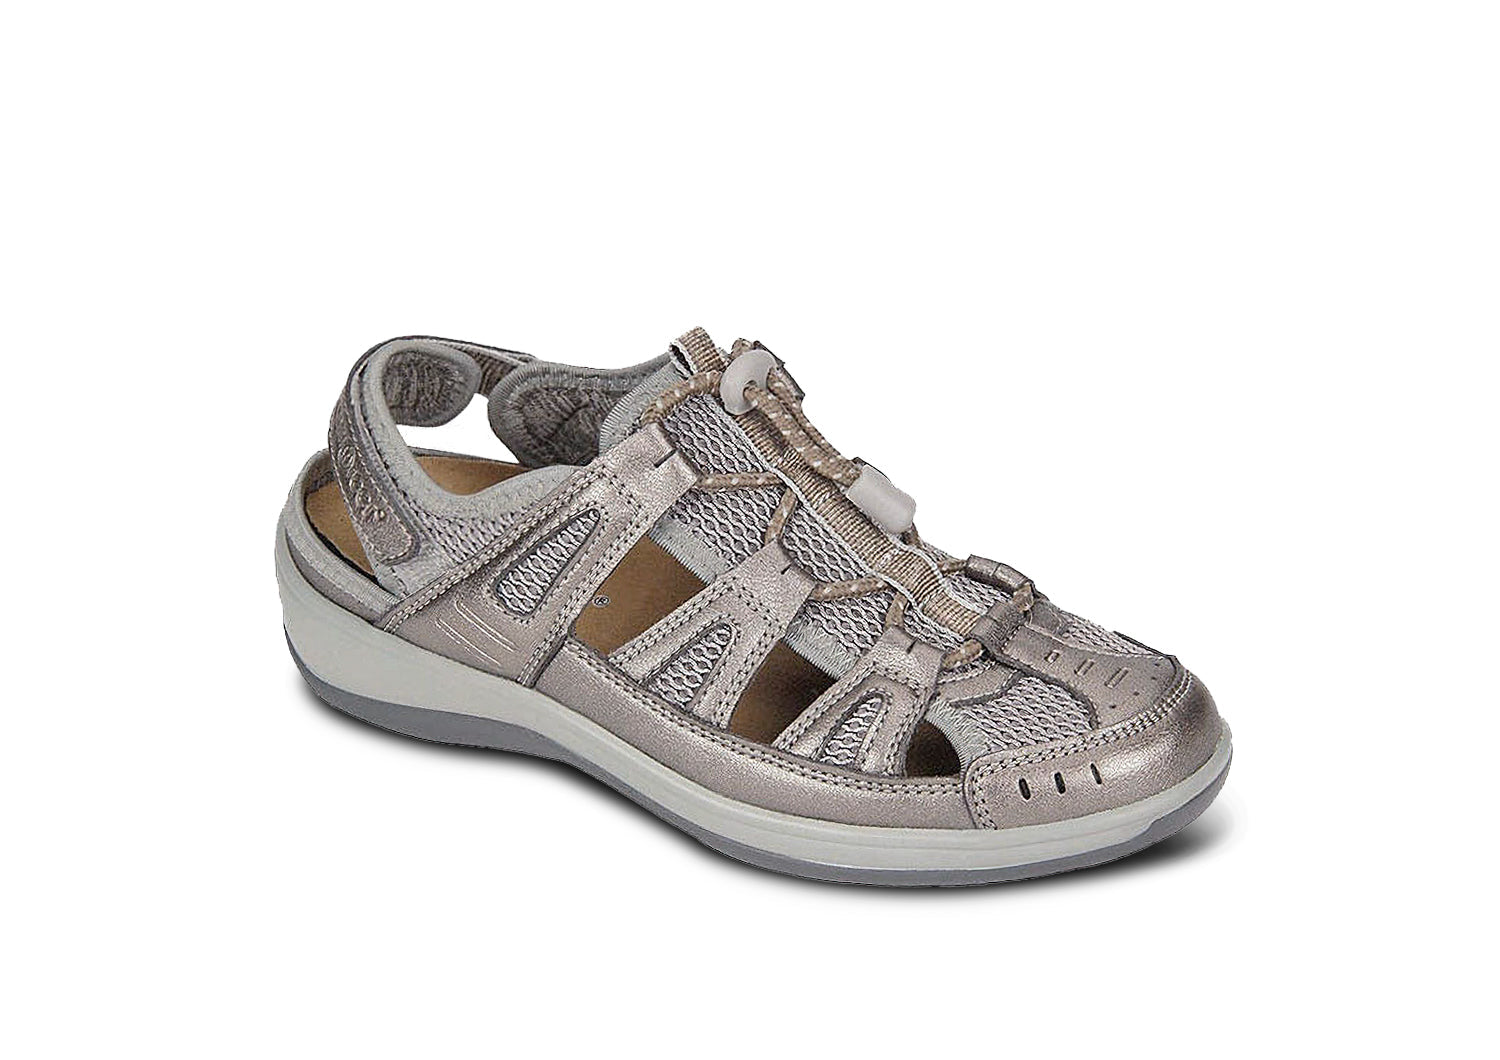 Summer Women Platform Open Toe Sport Sandals Wedge High Heel Sneakers Shoes  | eBay